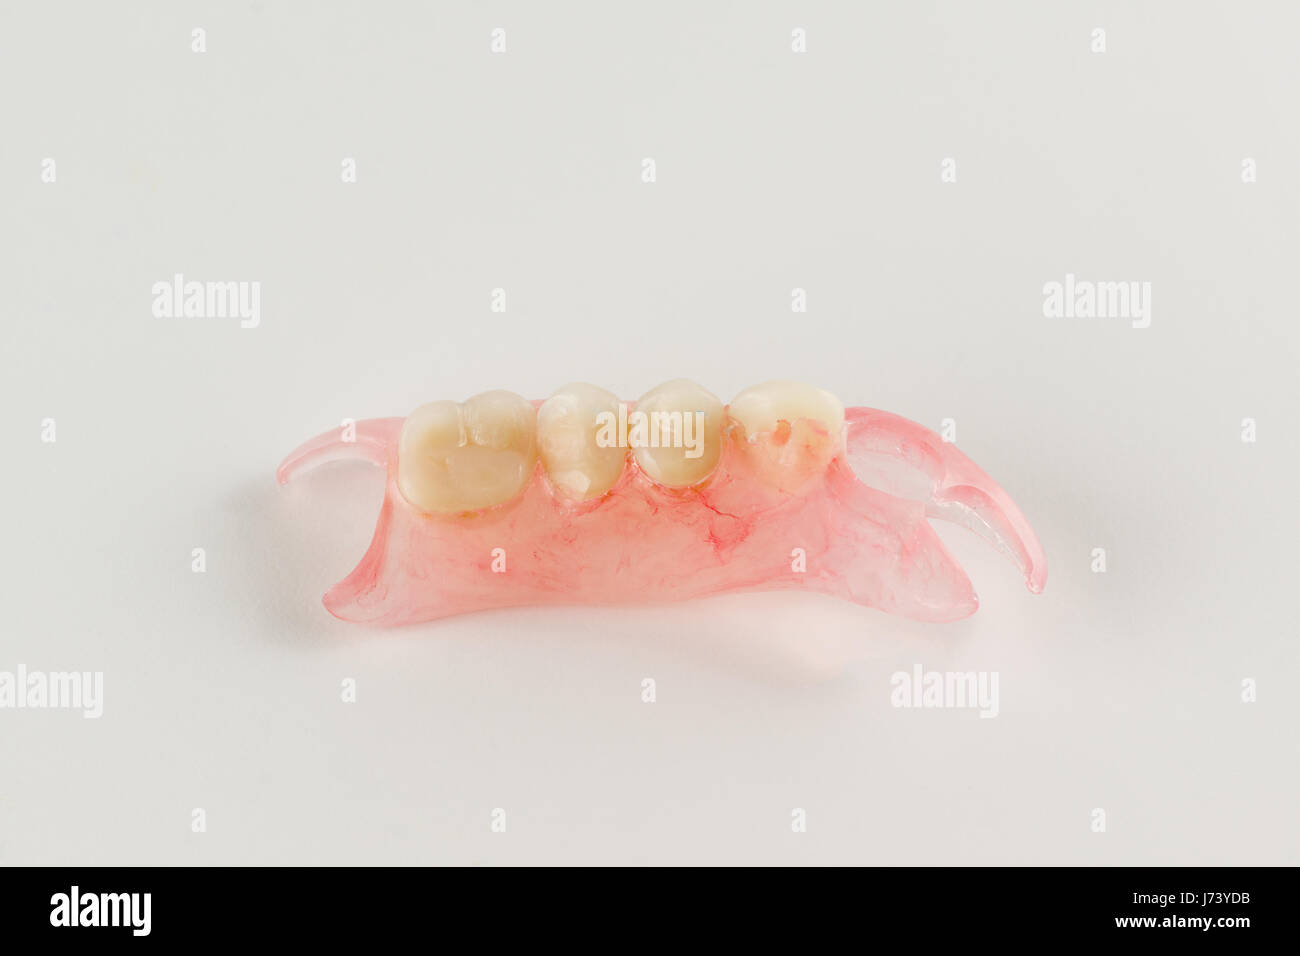 modern nylon removable dental prosthesis for restoring dentition Stock Photo